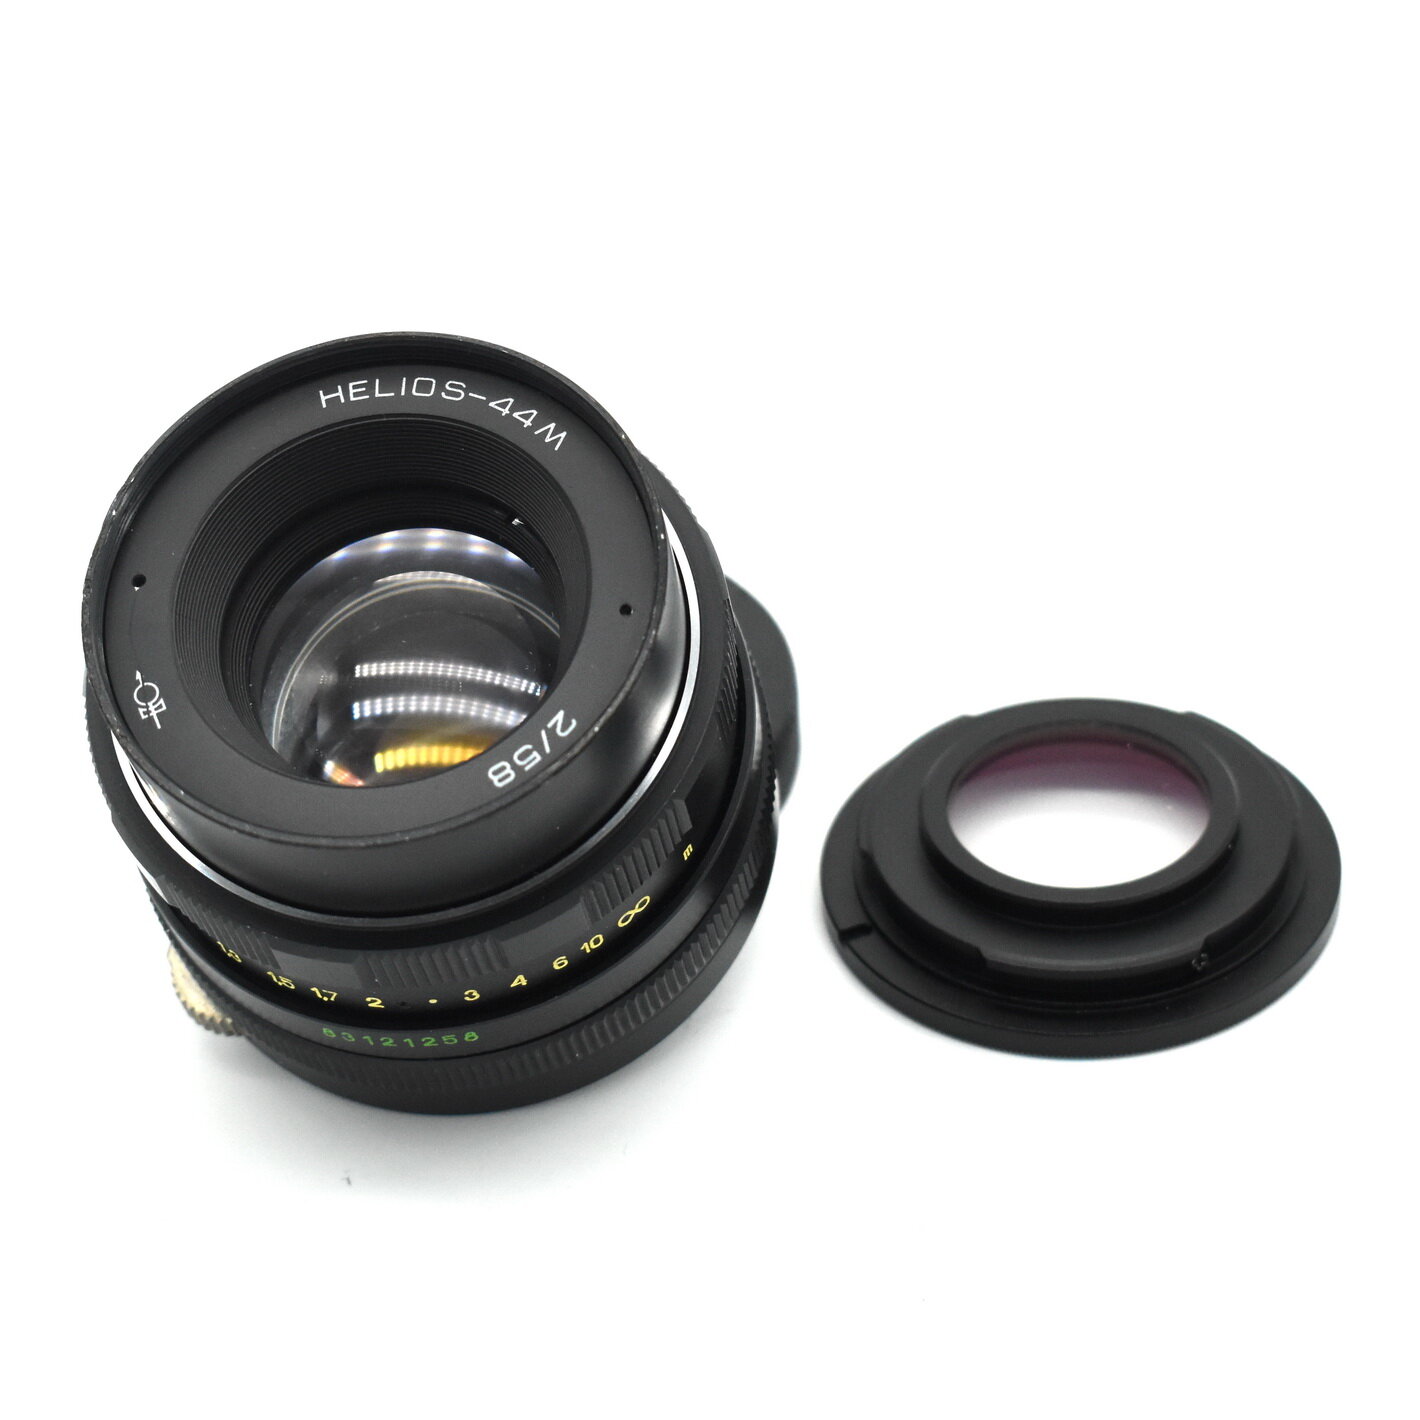 Светосильный мануальный объектив Гелиос-44М 2/58 для Nikon F с фокусировкой на бесконечность.